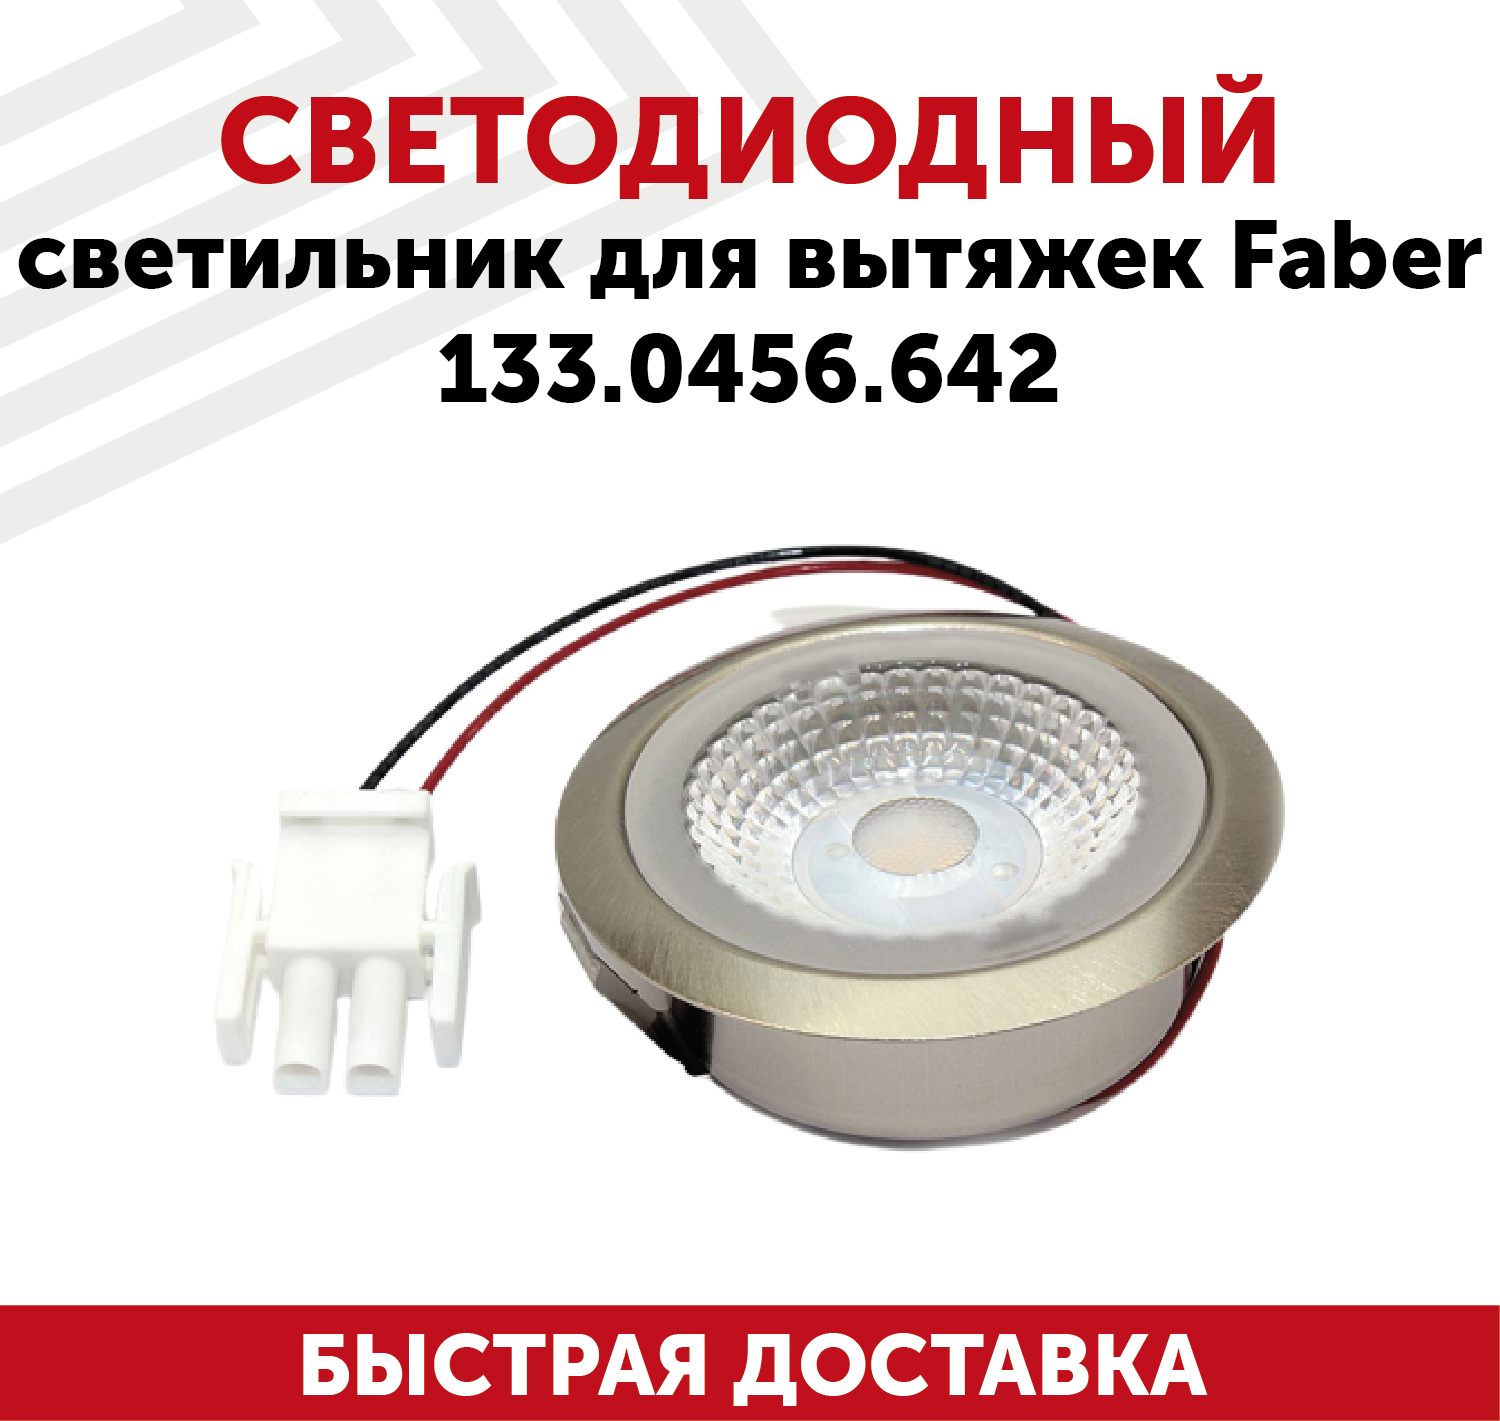 Светодиодный светильник для кухонных вытяжек Faber 133.0456.642